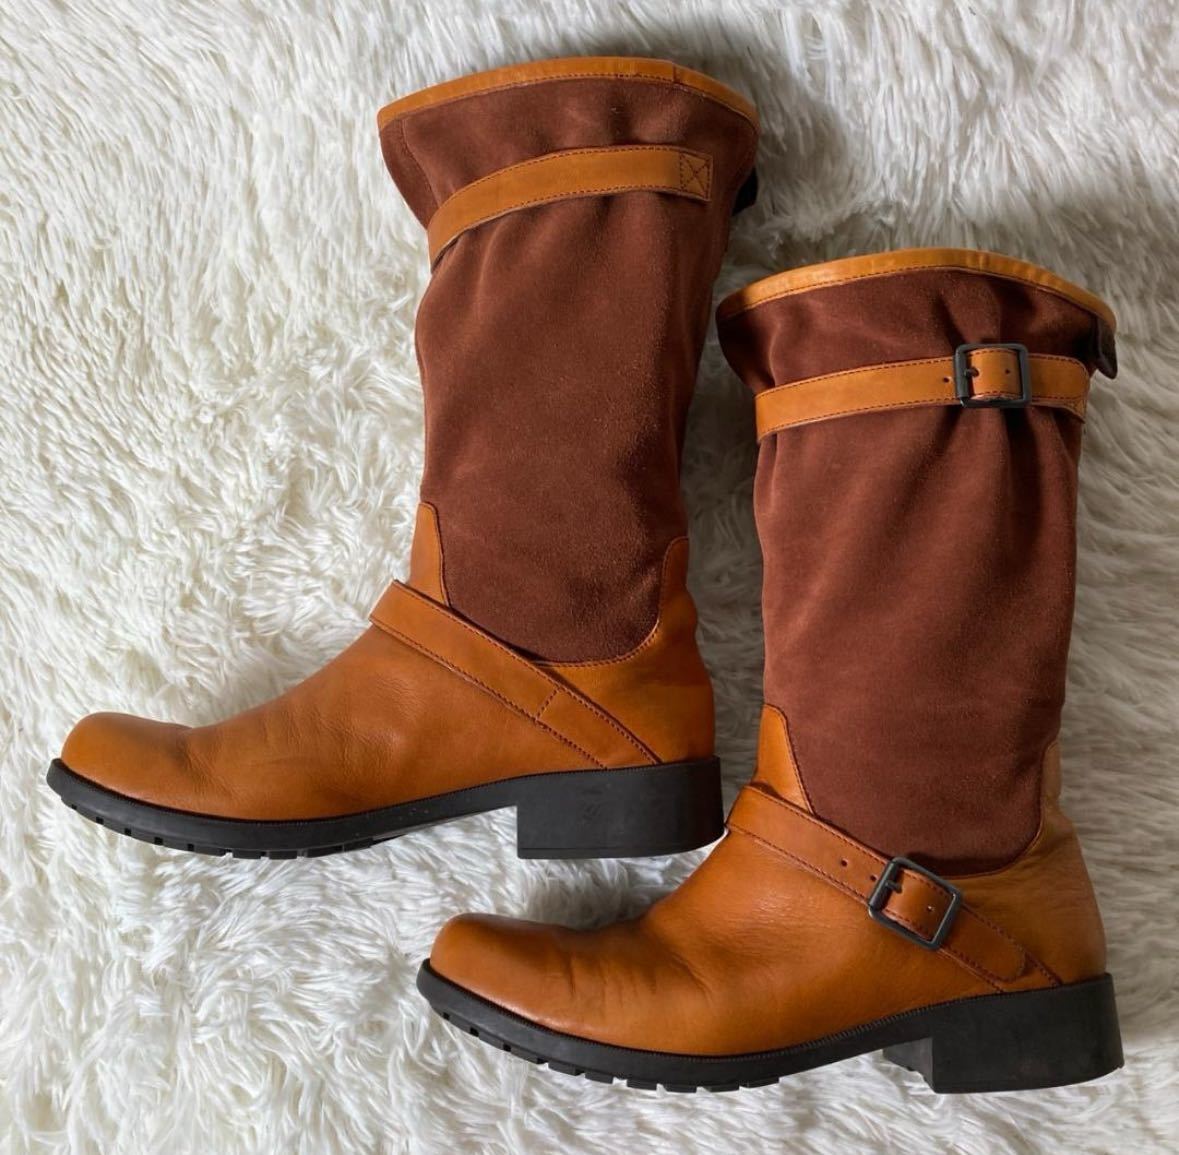 [ одежда ]CAMPER Camper замша кожа переключатель двойной ремень средний ботинки Camel 39 примерно 24.5. женский модный обувь 